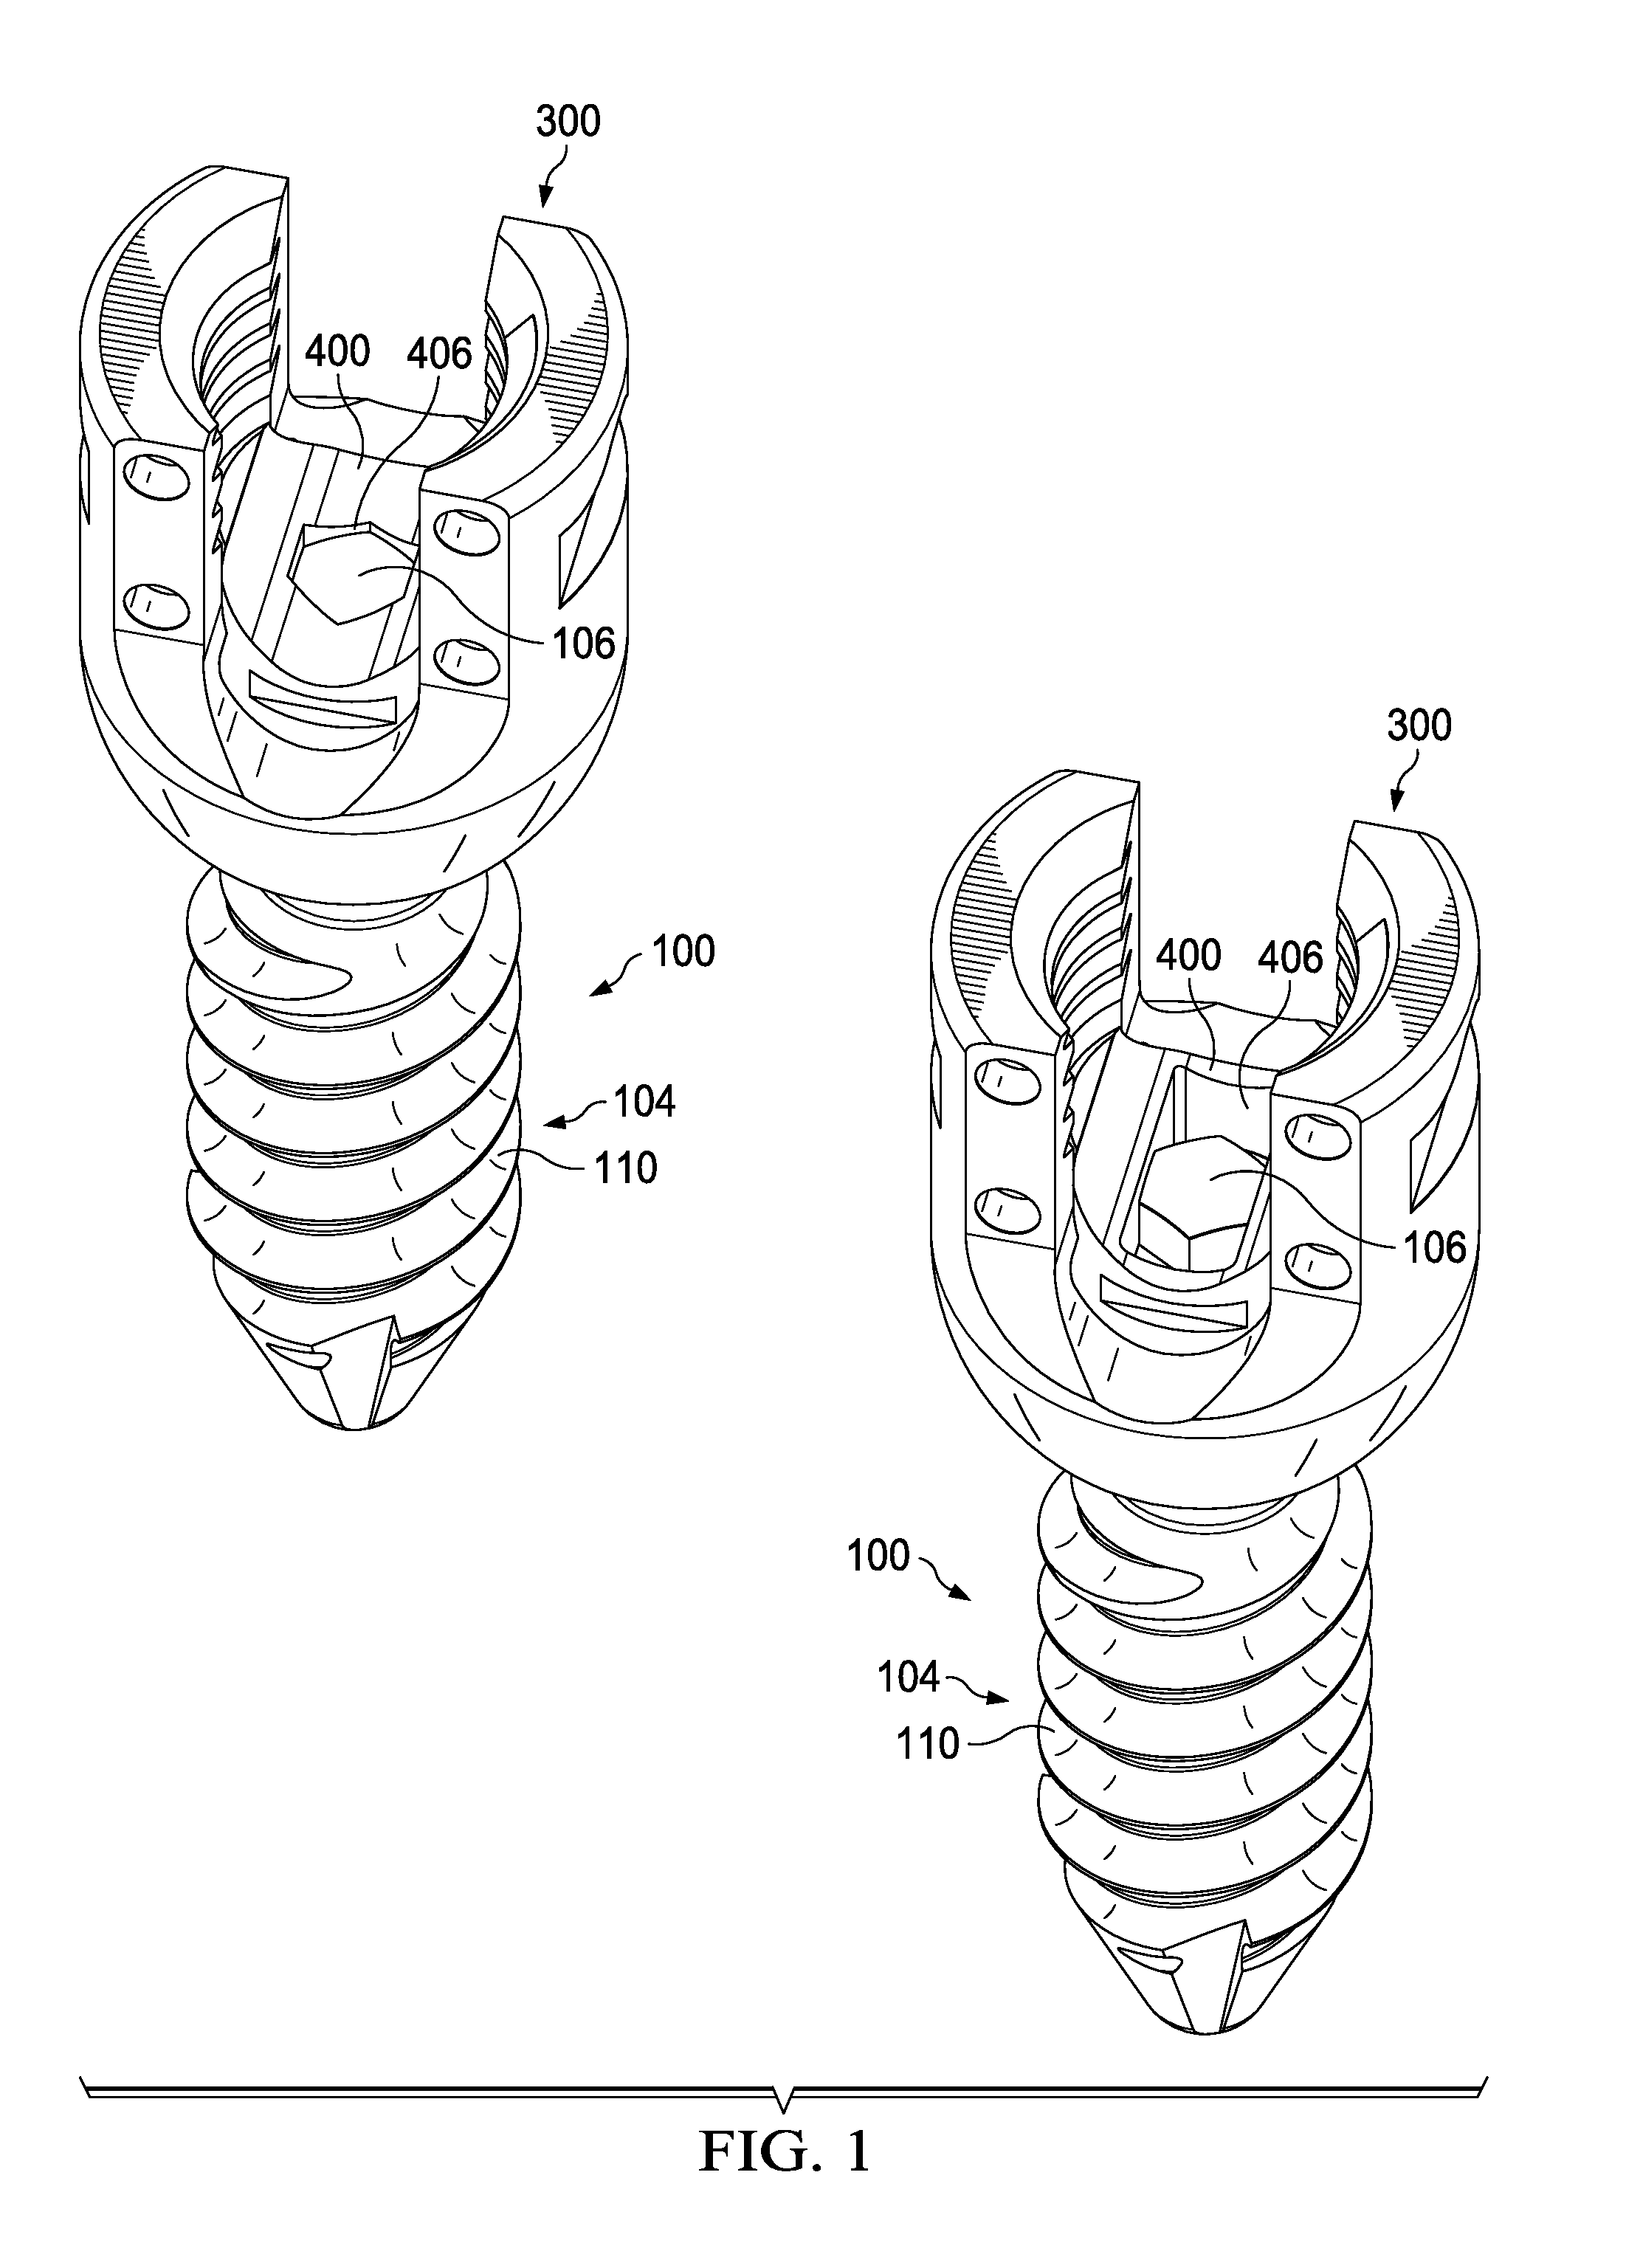 Modular pedicle screw